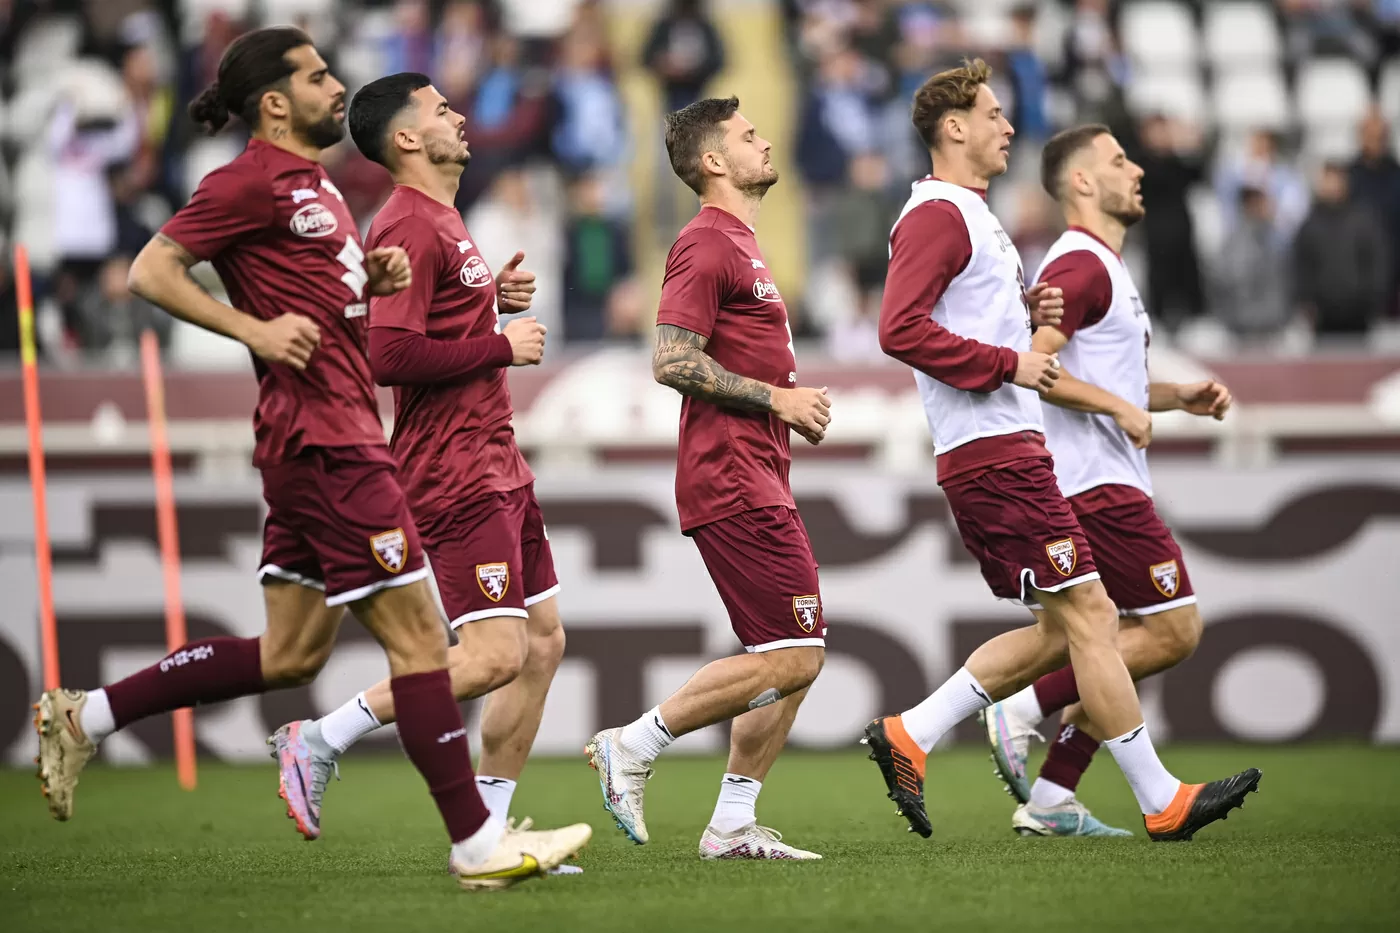 Le probabili formazioni di Torino Roma in allenamento prima della partita di Serie A